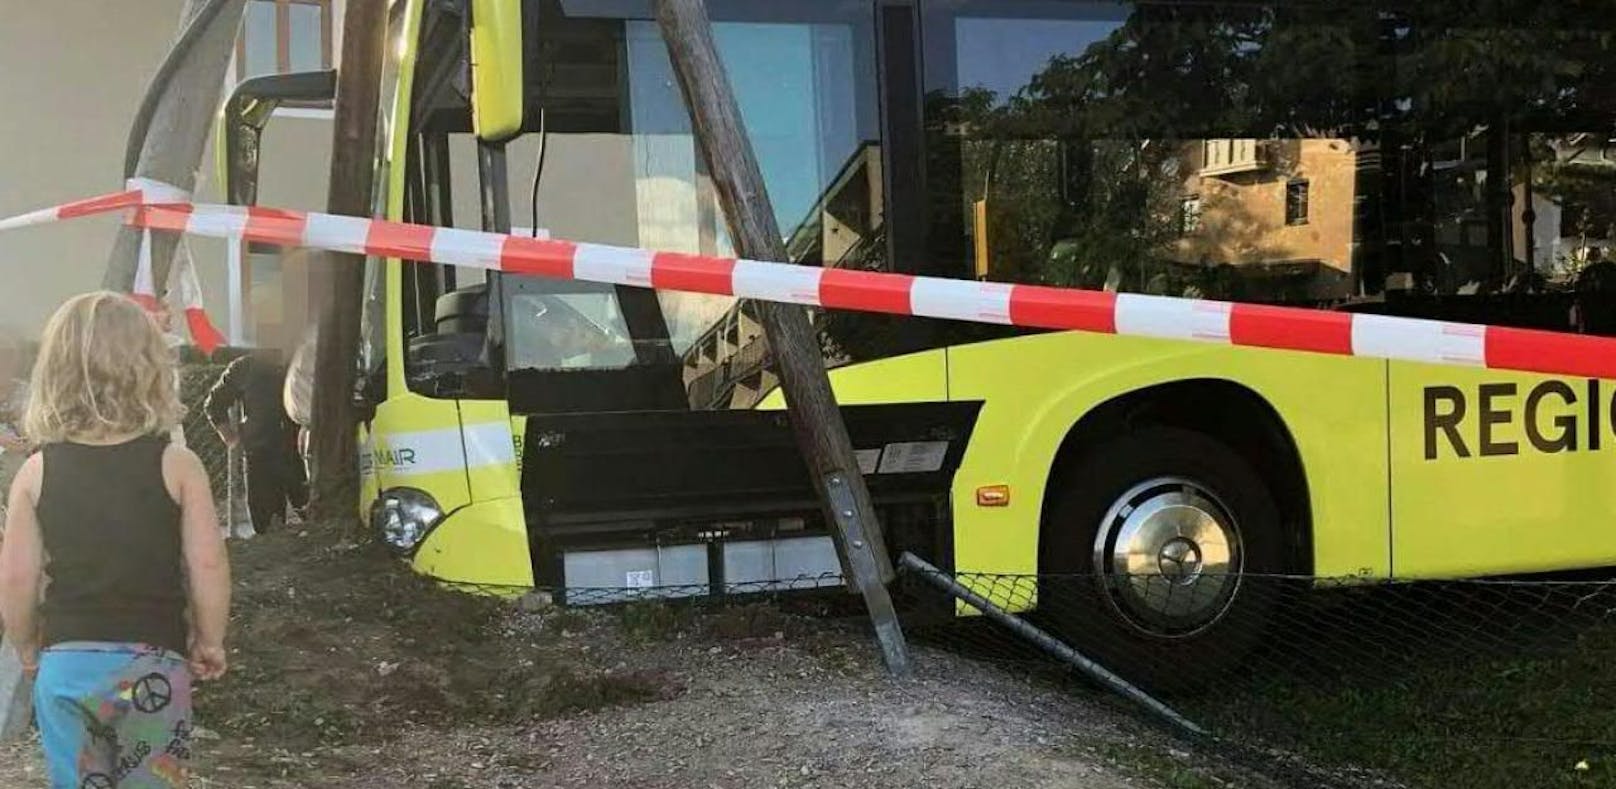 Linienbus rollte ohne Fahrer auf Spielplatz zu